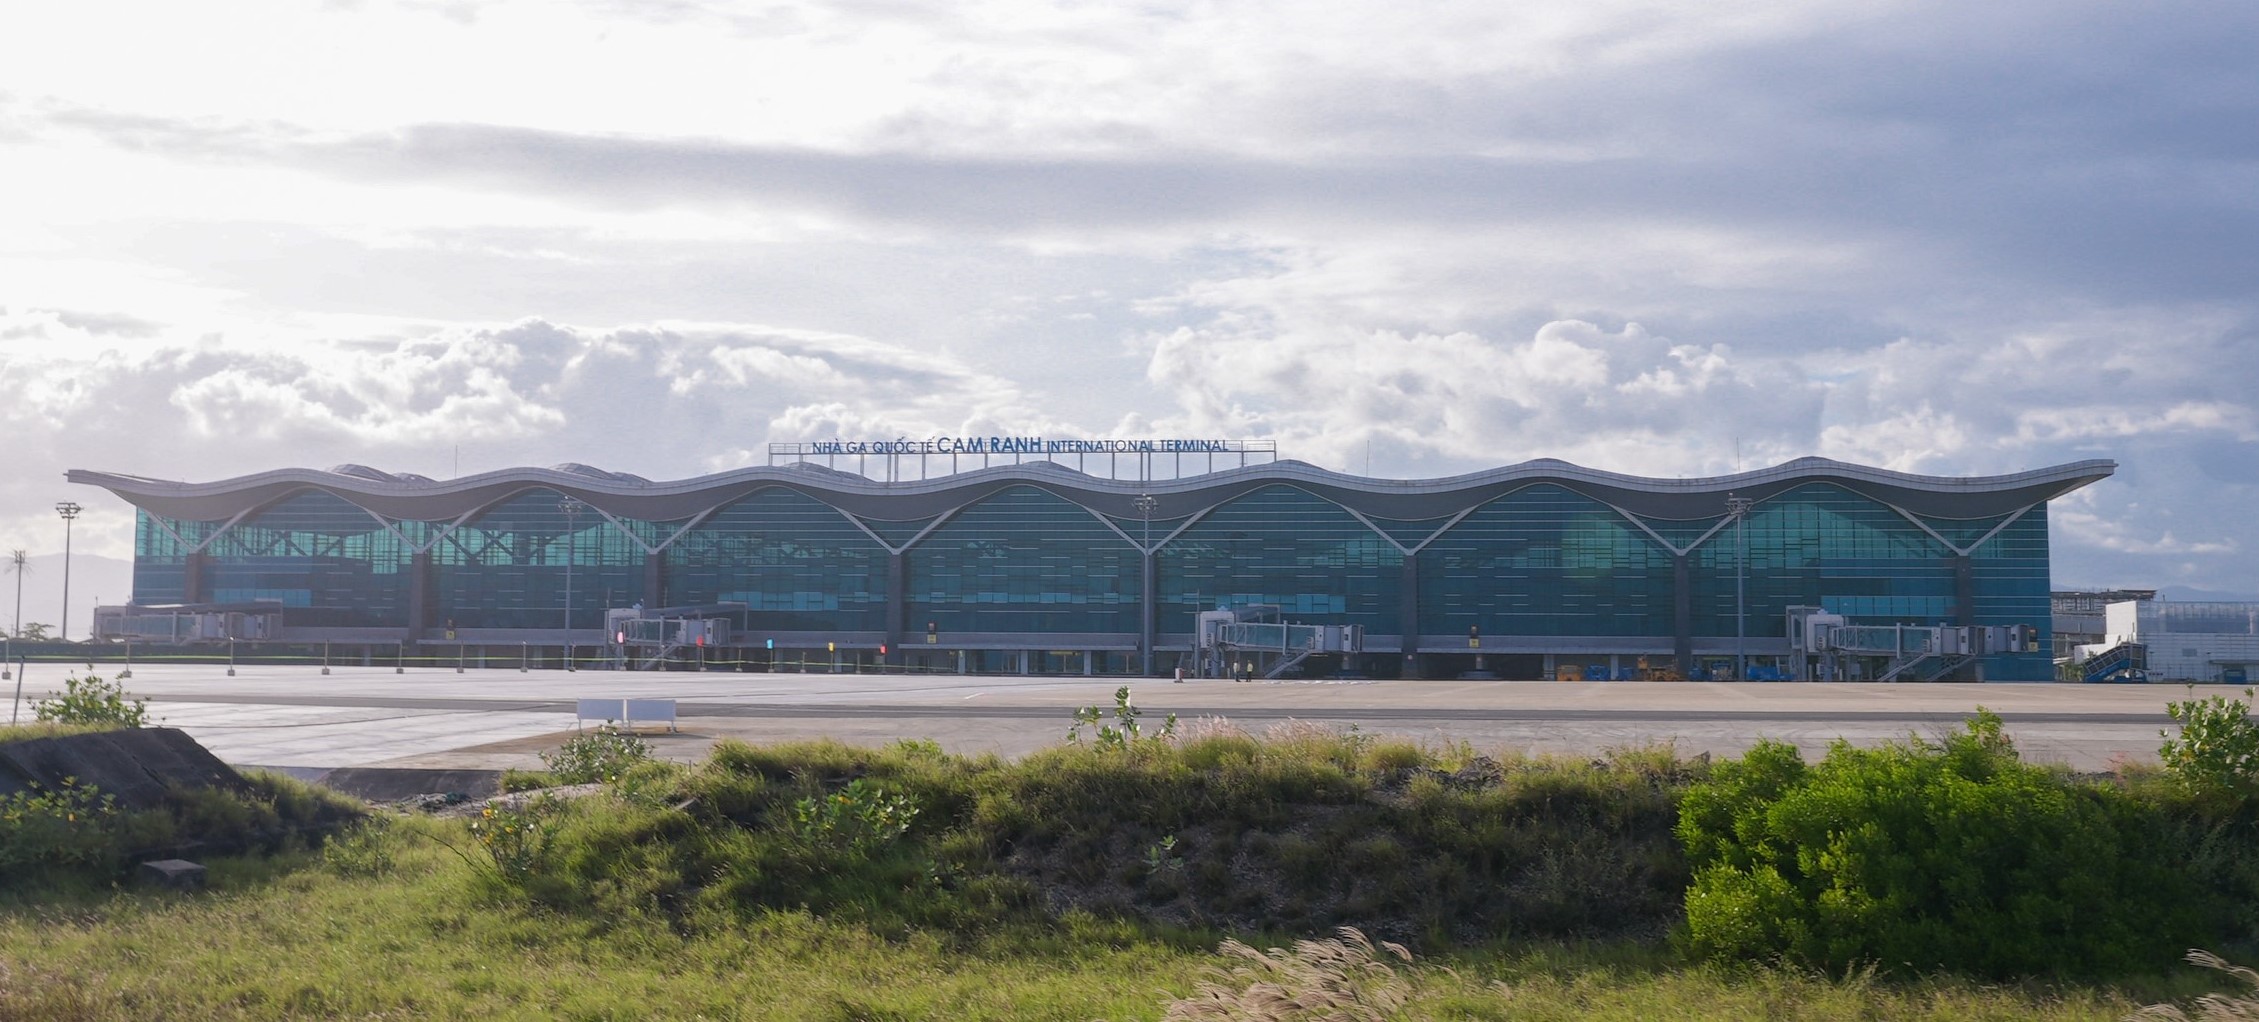 Dự án Cải tạo, nâng cấp sân đỗ máy bay hiện hữu (QT+QN) - Cảng hàng không quốc tế Cam Ranh